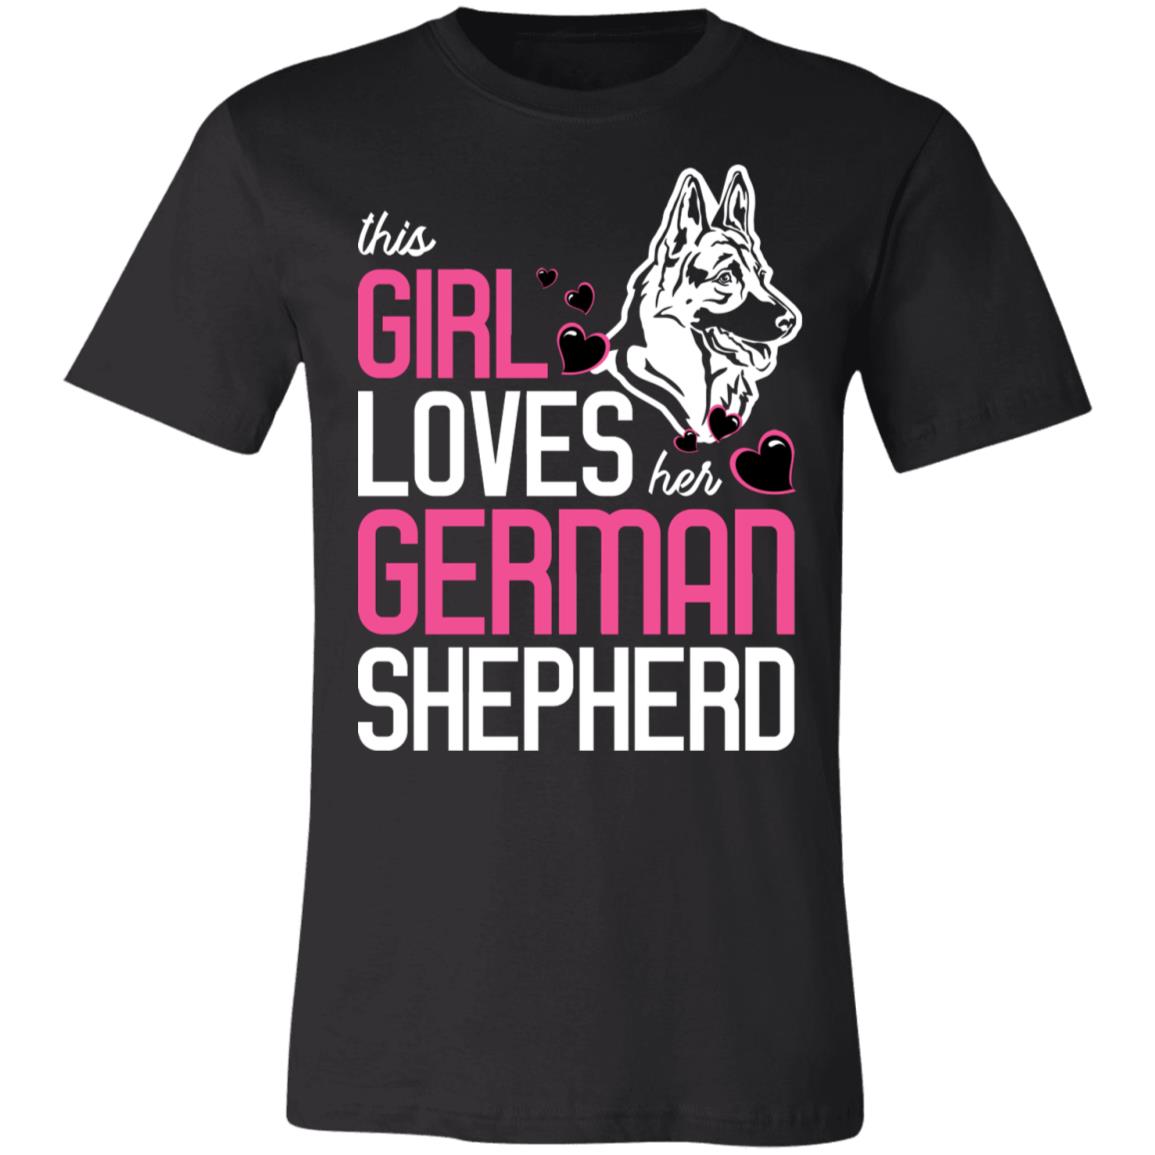 This Girl Loves Her German Shepherd T-Shirt